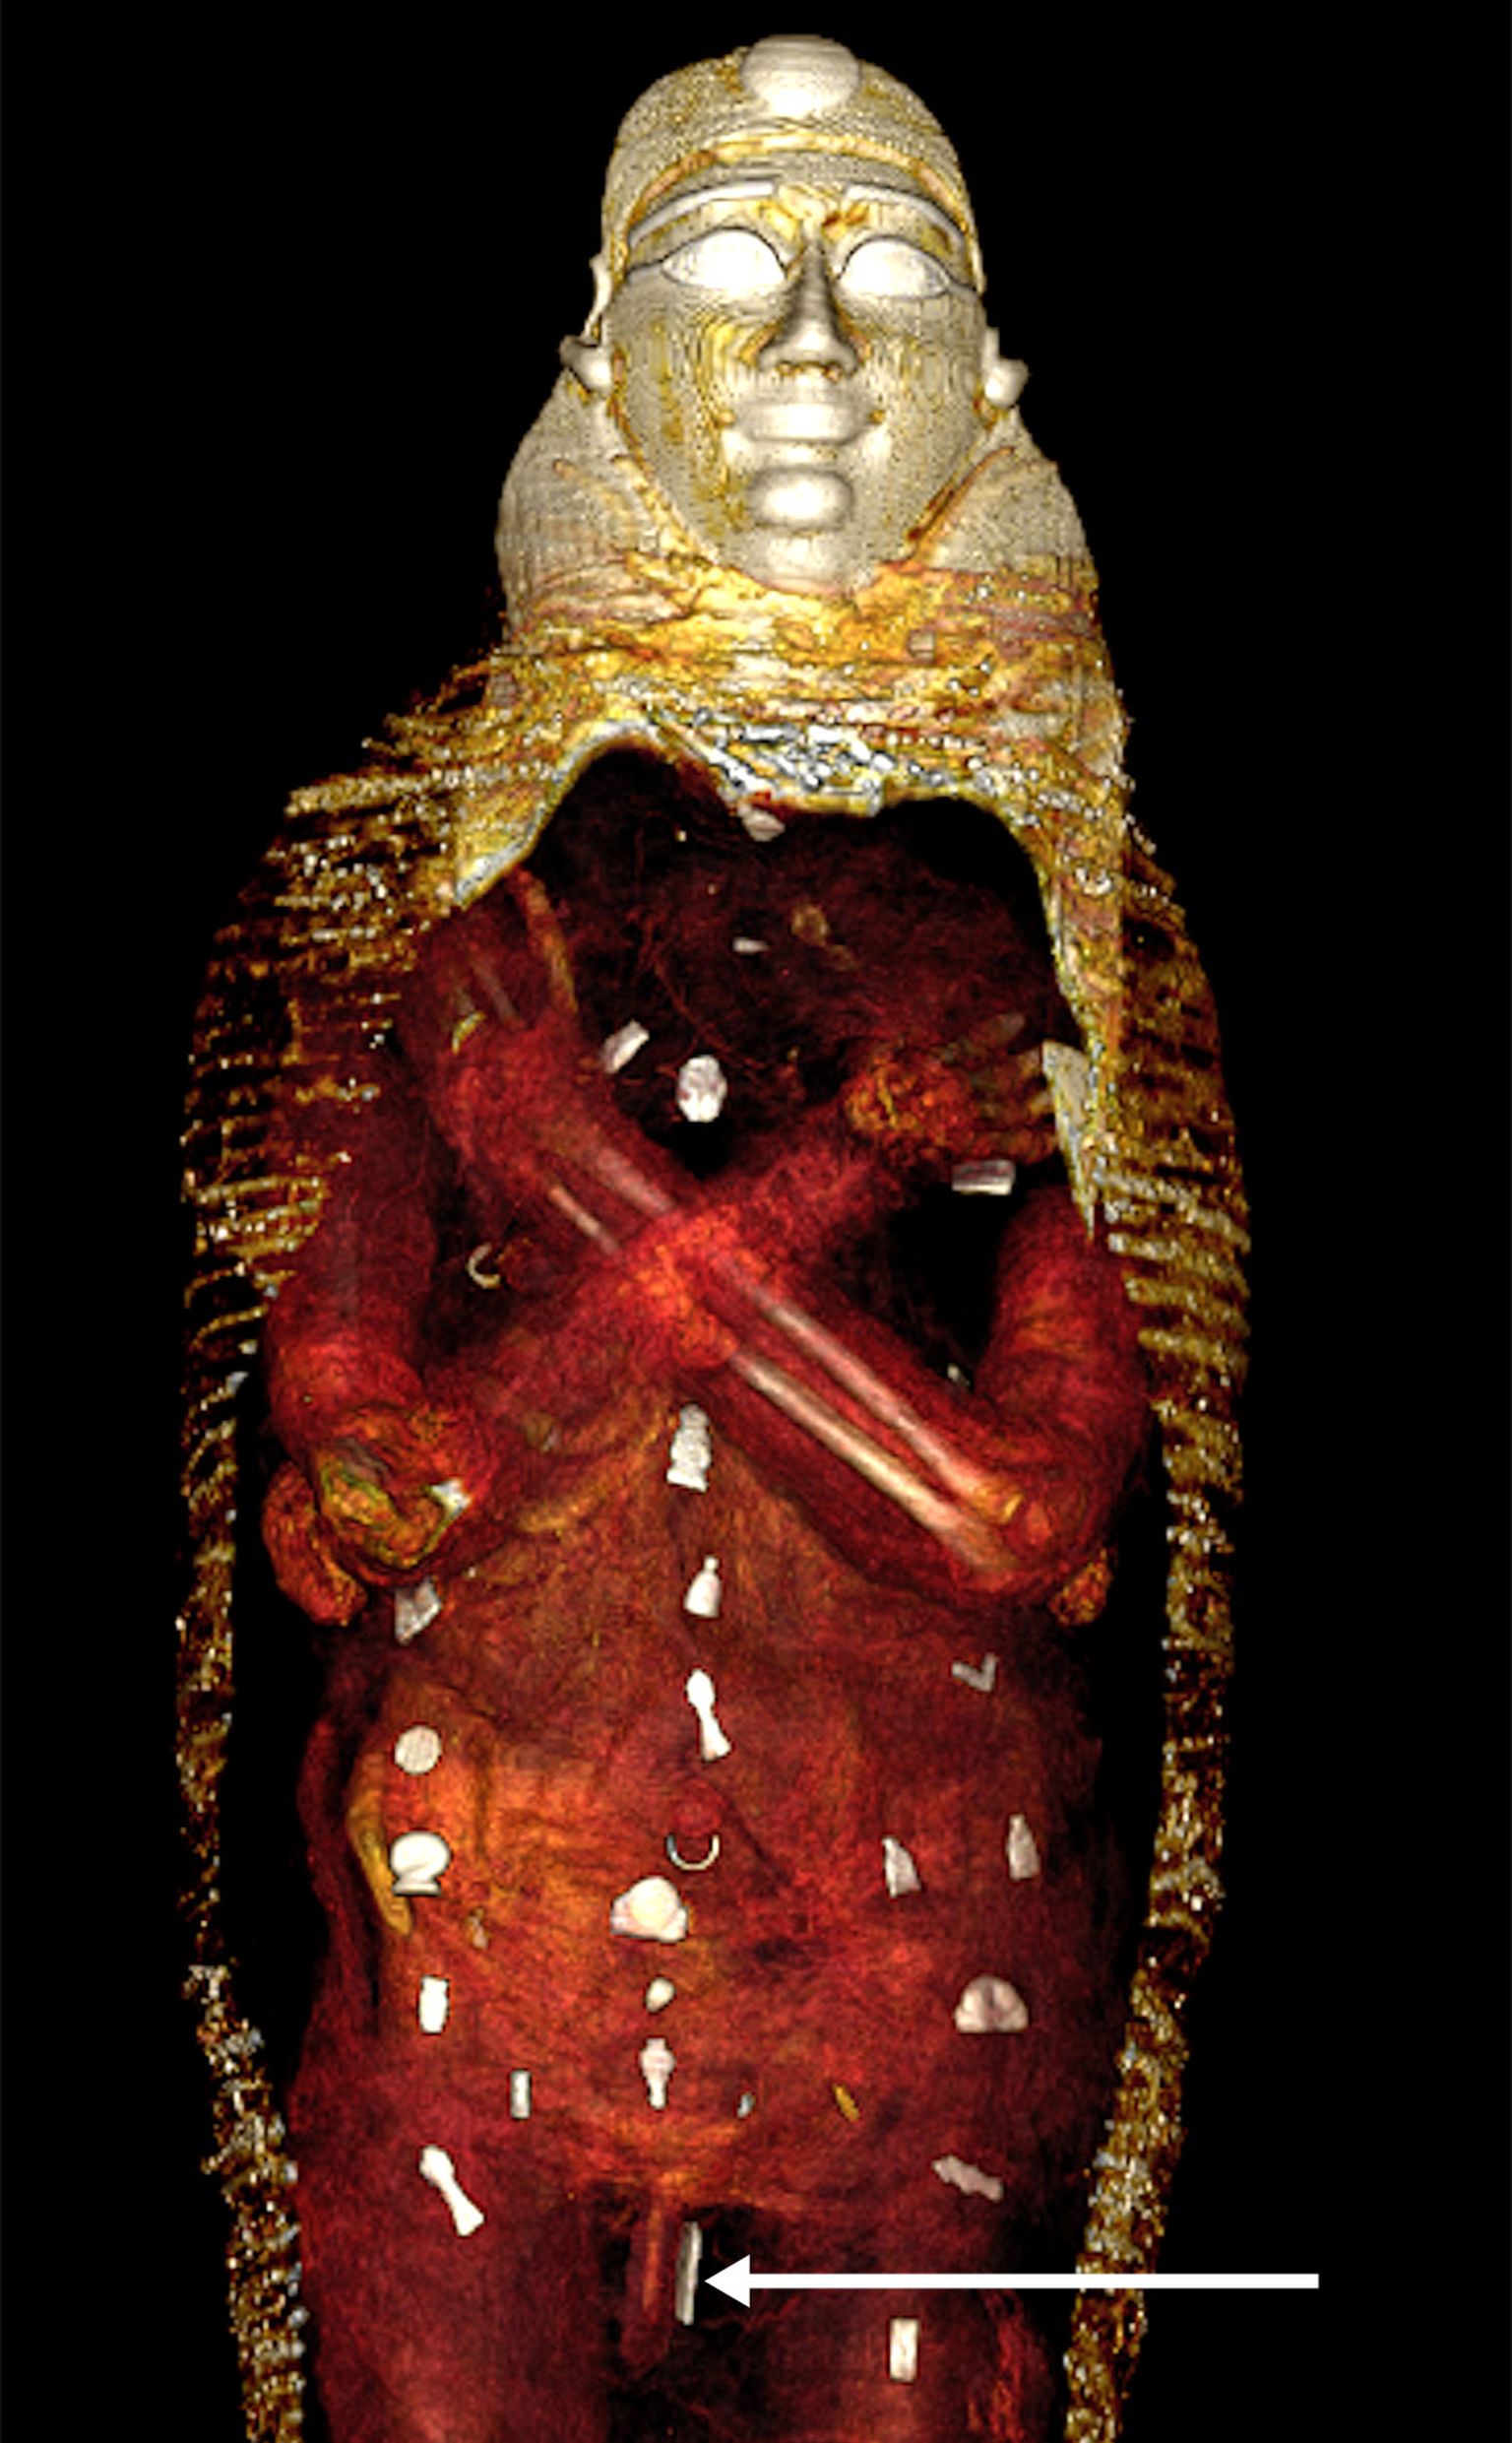 Vana-Egiptuse muumia kompuutertomograafiline uuring näitas, et ta suri 14-15-aastasena ja ta maeti koos 49 amuletiga, mis pidid teda iidsete egiptlaste arusaamade kohaselt teispoolsuses kaitsma